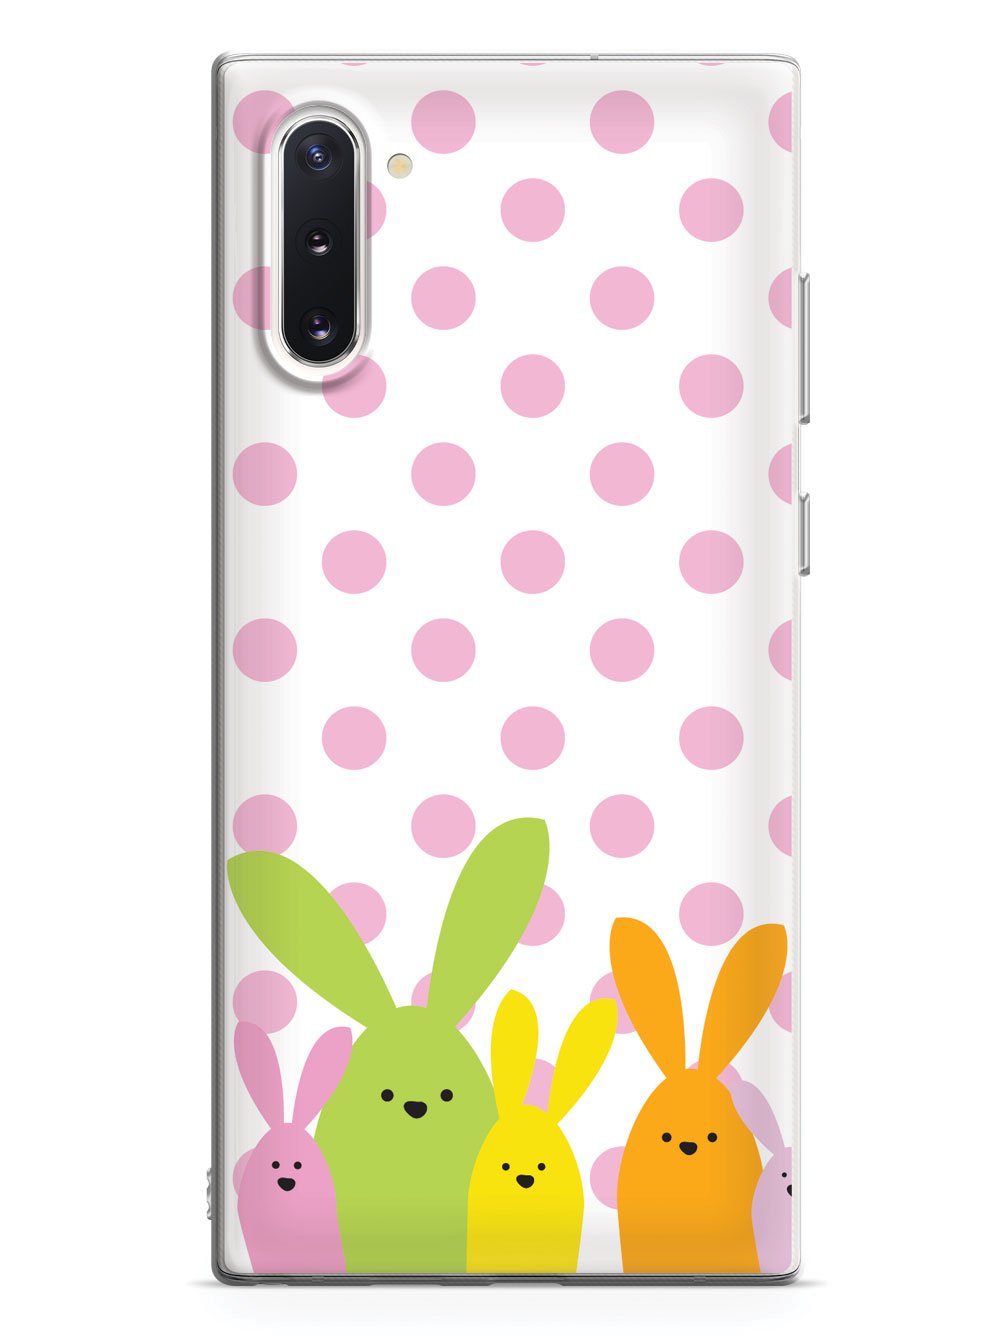 Adorable Easter Polka Dot Bunnies Case